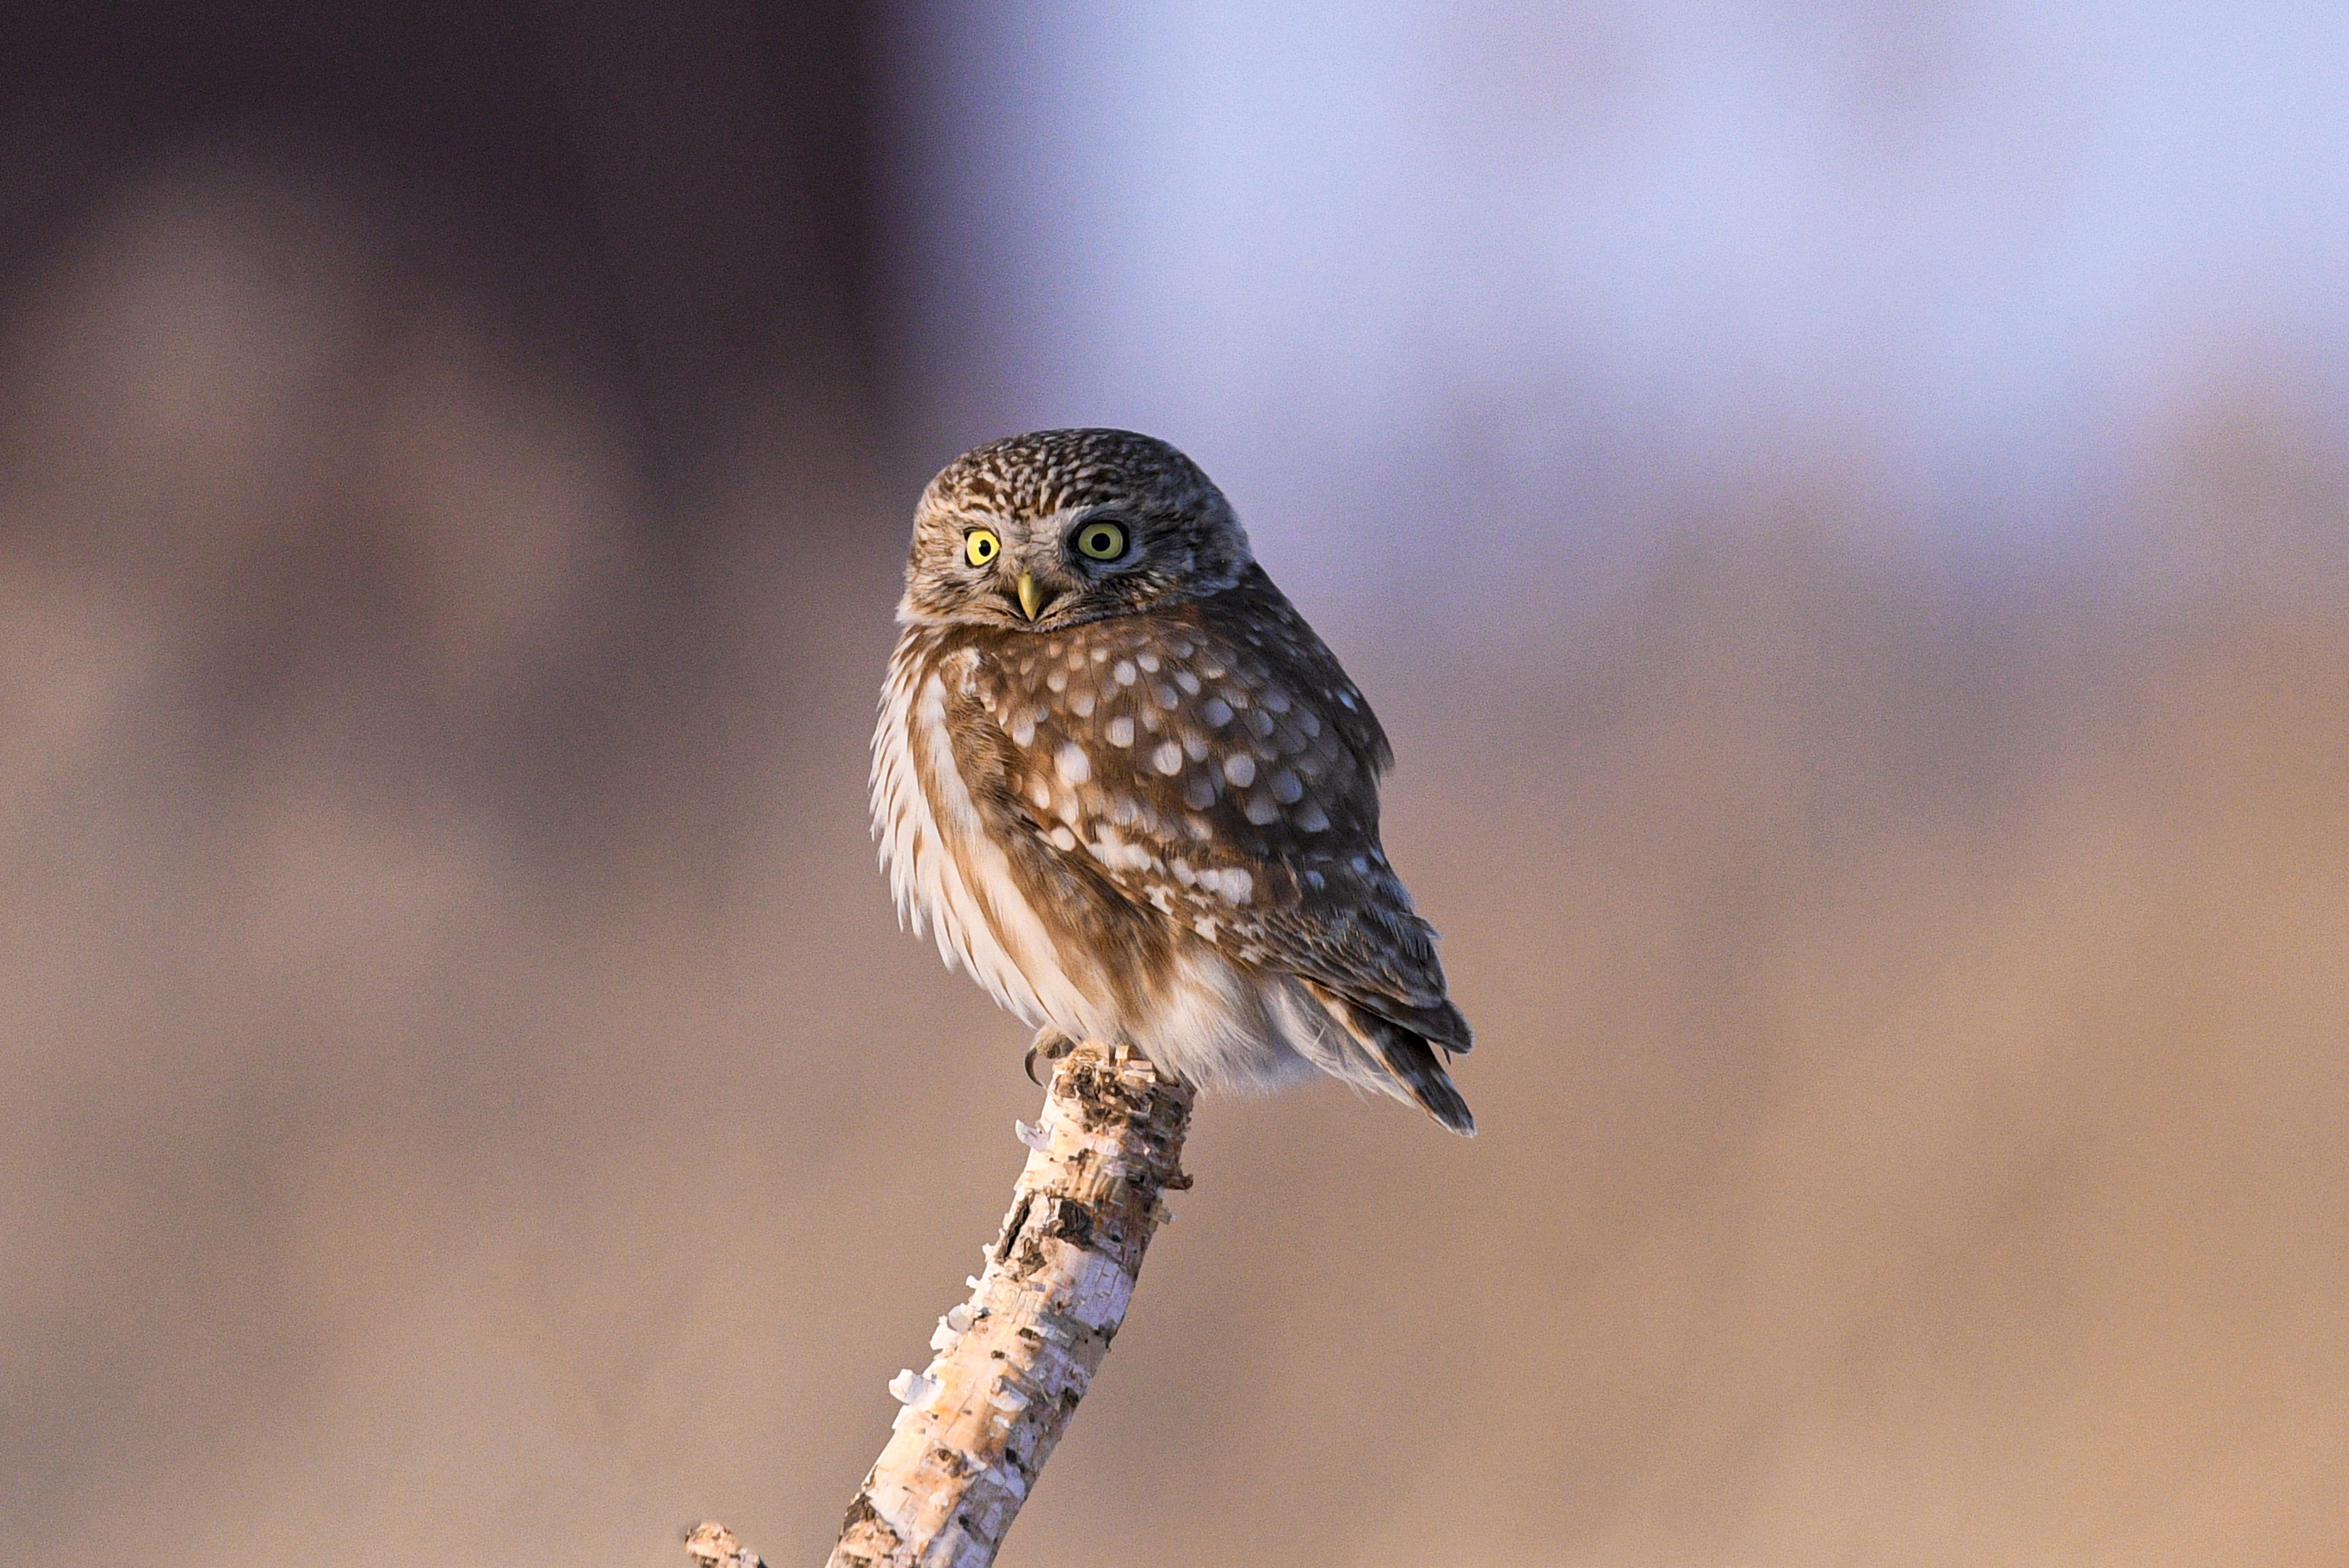 Photos of a cute little owl on a branch - CGTN